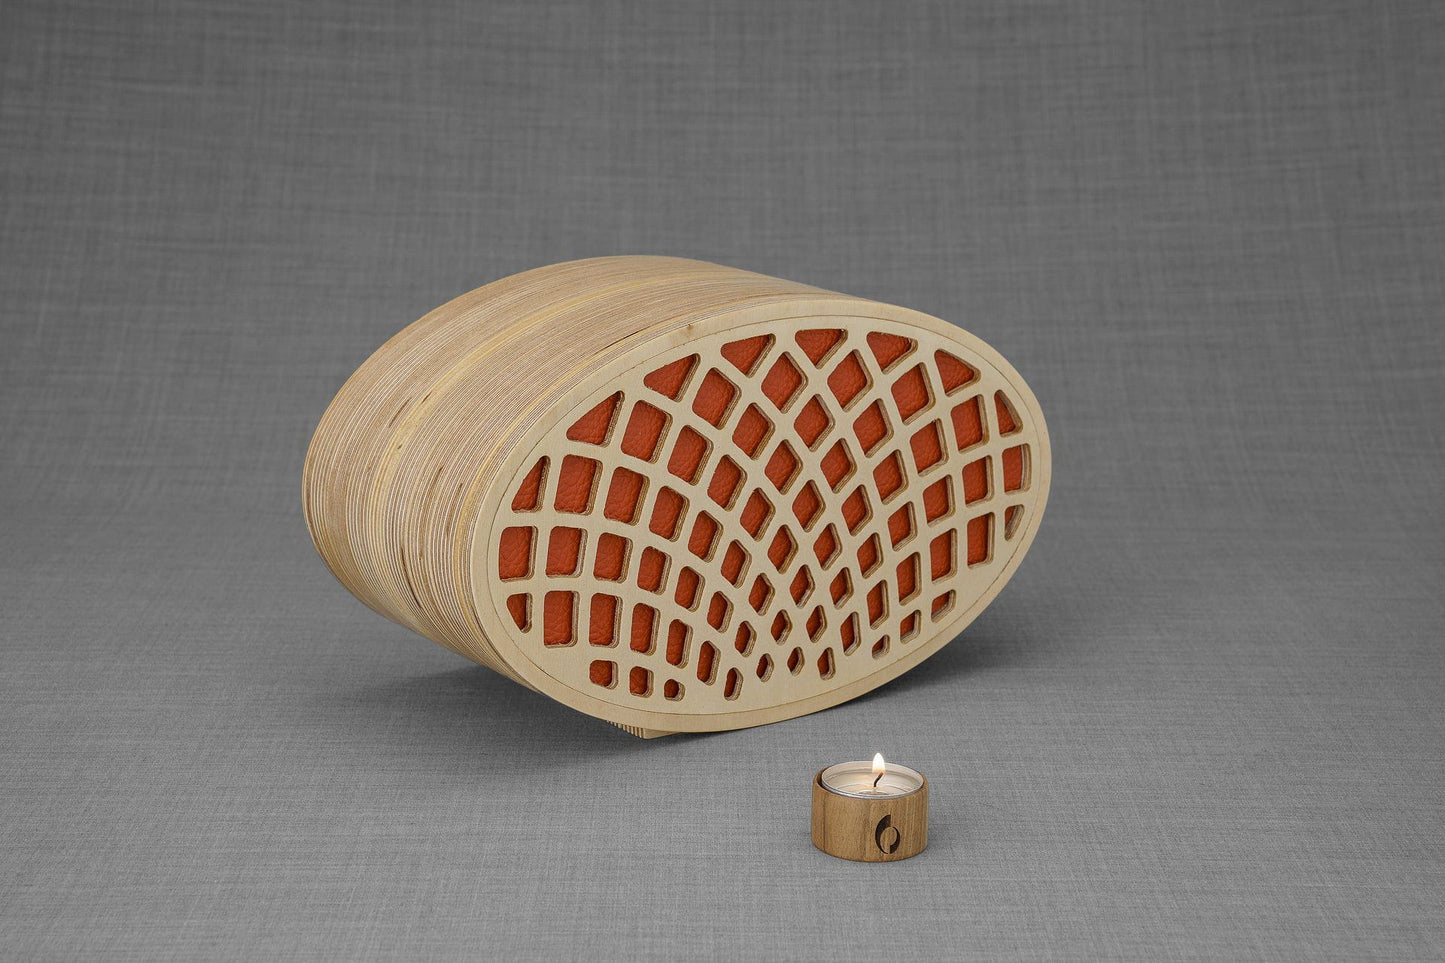 Pulvis Art Urns Adult Size Urn Wooden Cremation Urn "Remembrance" - Handmade - Orange Leather